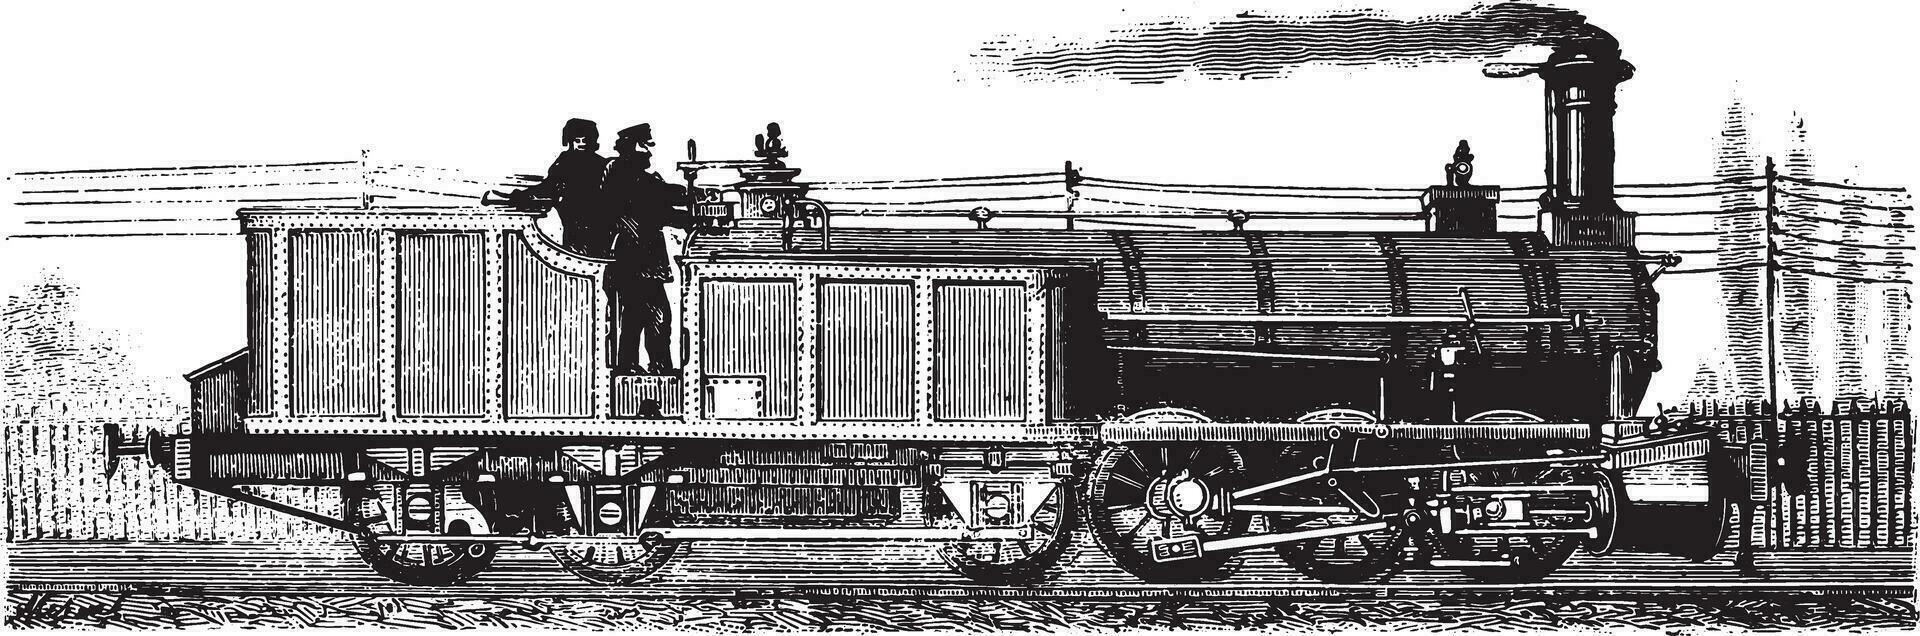 merveilles de le industrie, le locomotive et offre, ancien gravure. vecteur